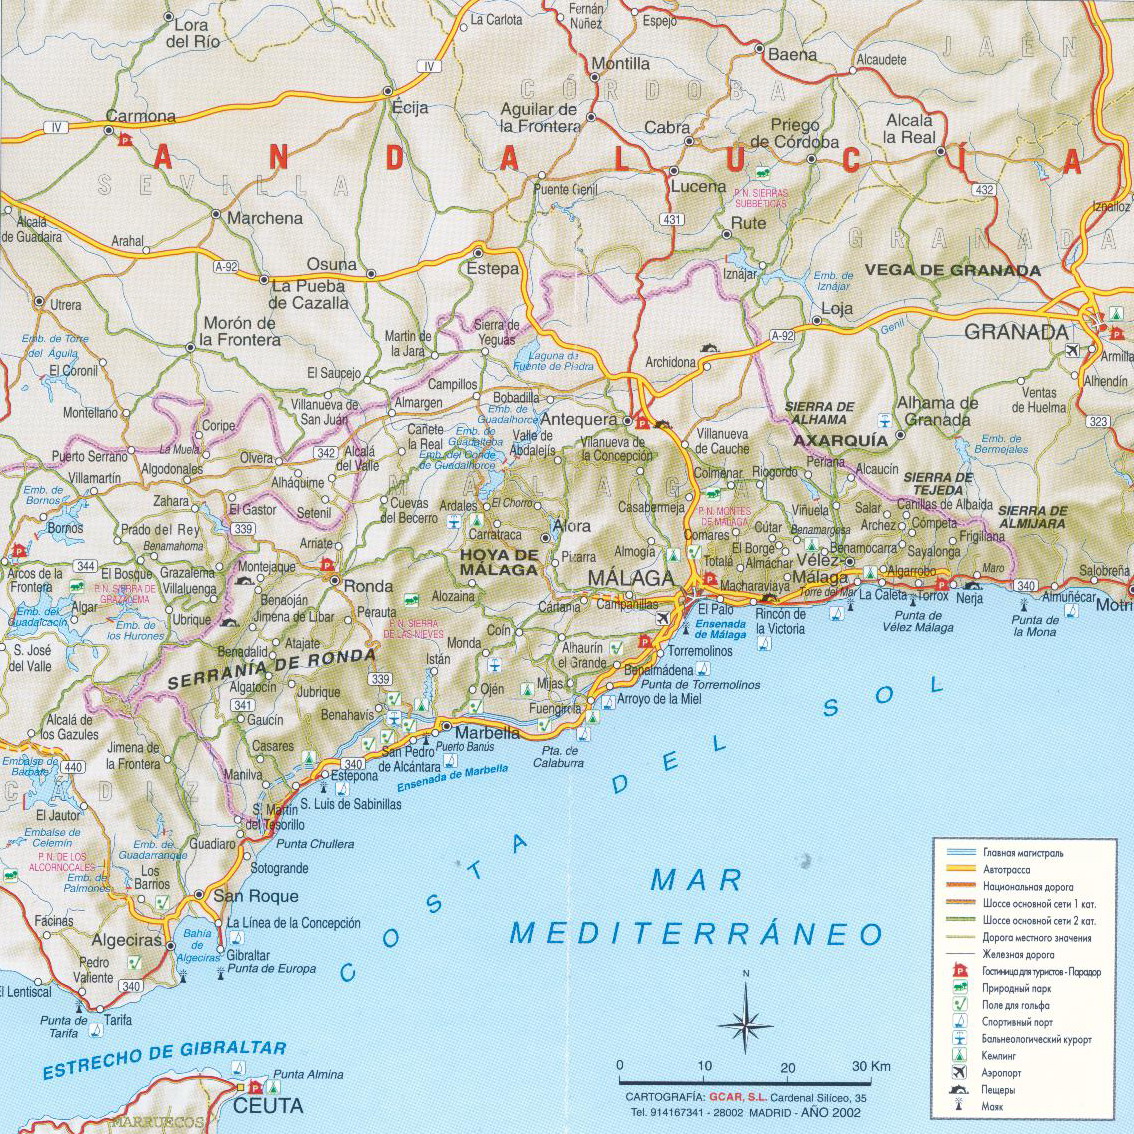 Достопримечательности коста дель соль - путеводитель по городам южного побережья испании, информация для проведения досуга